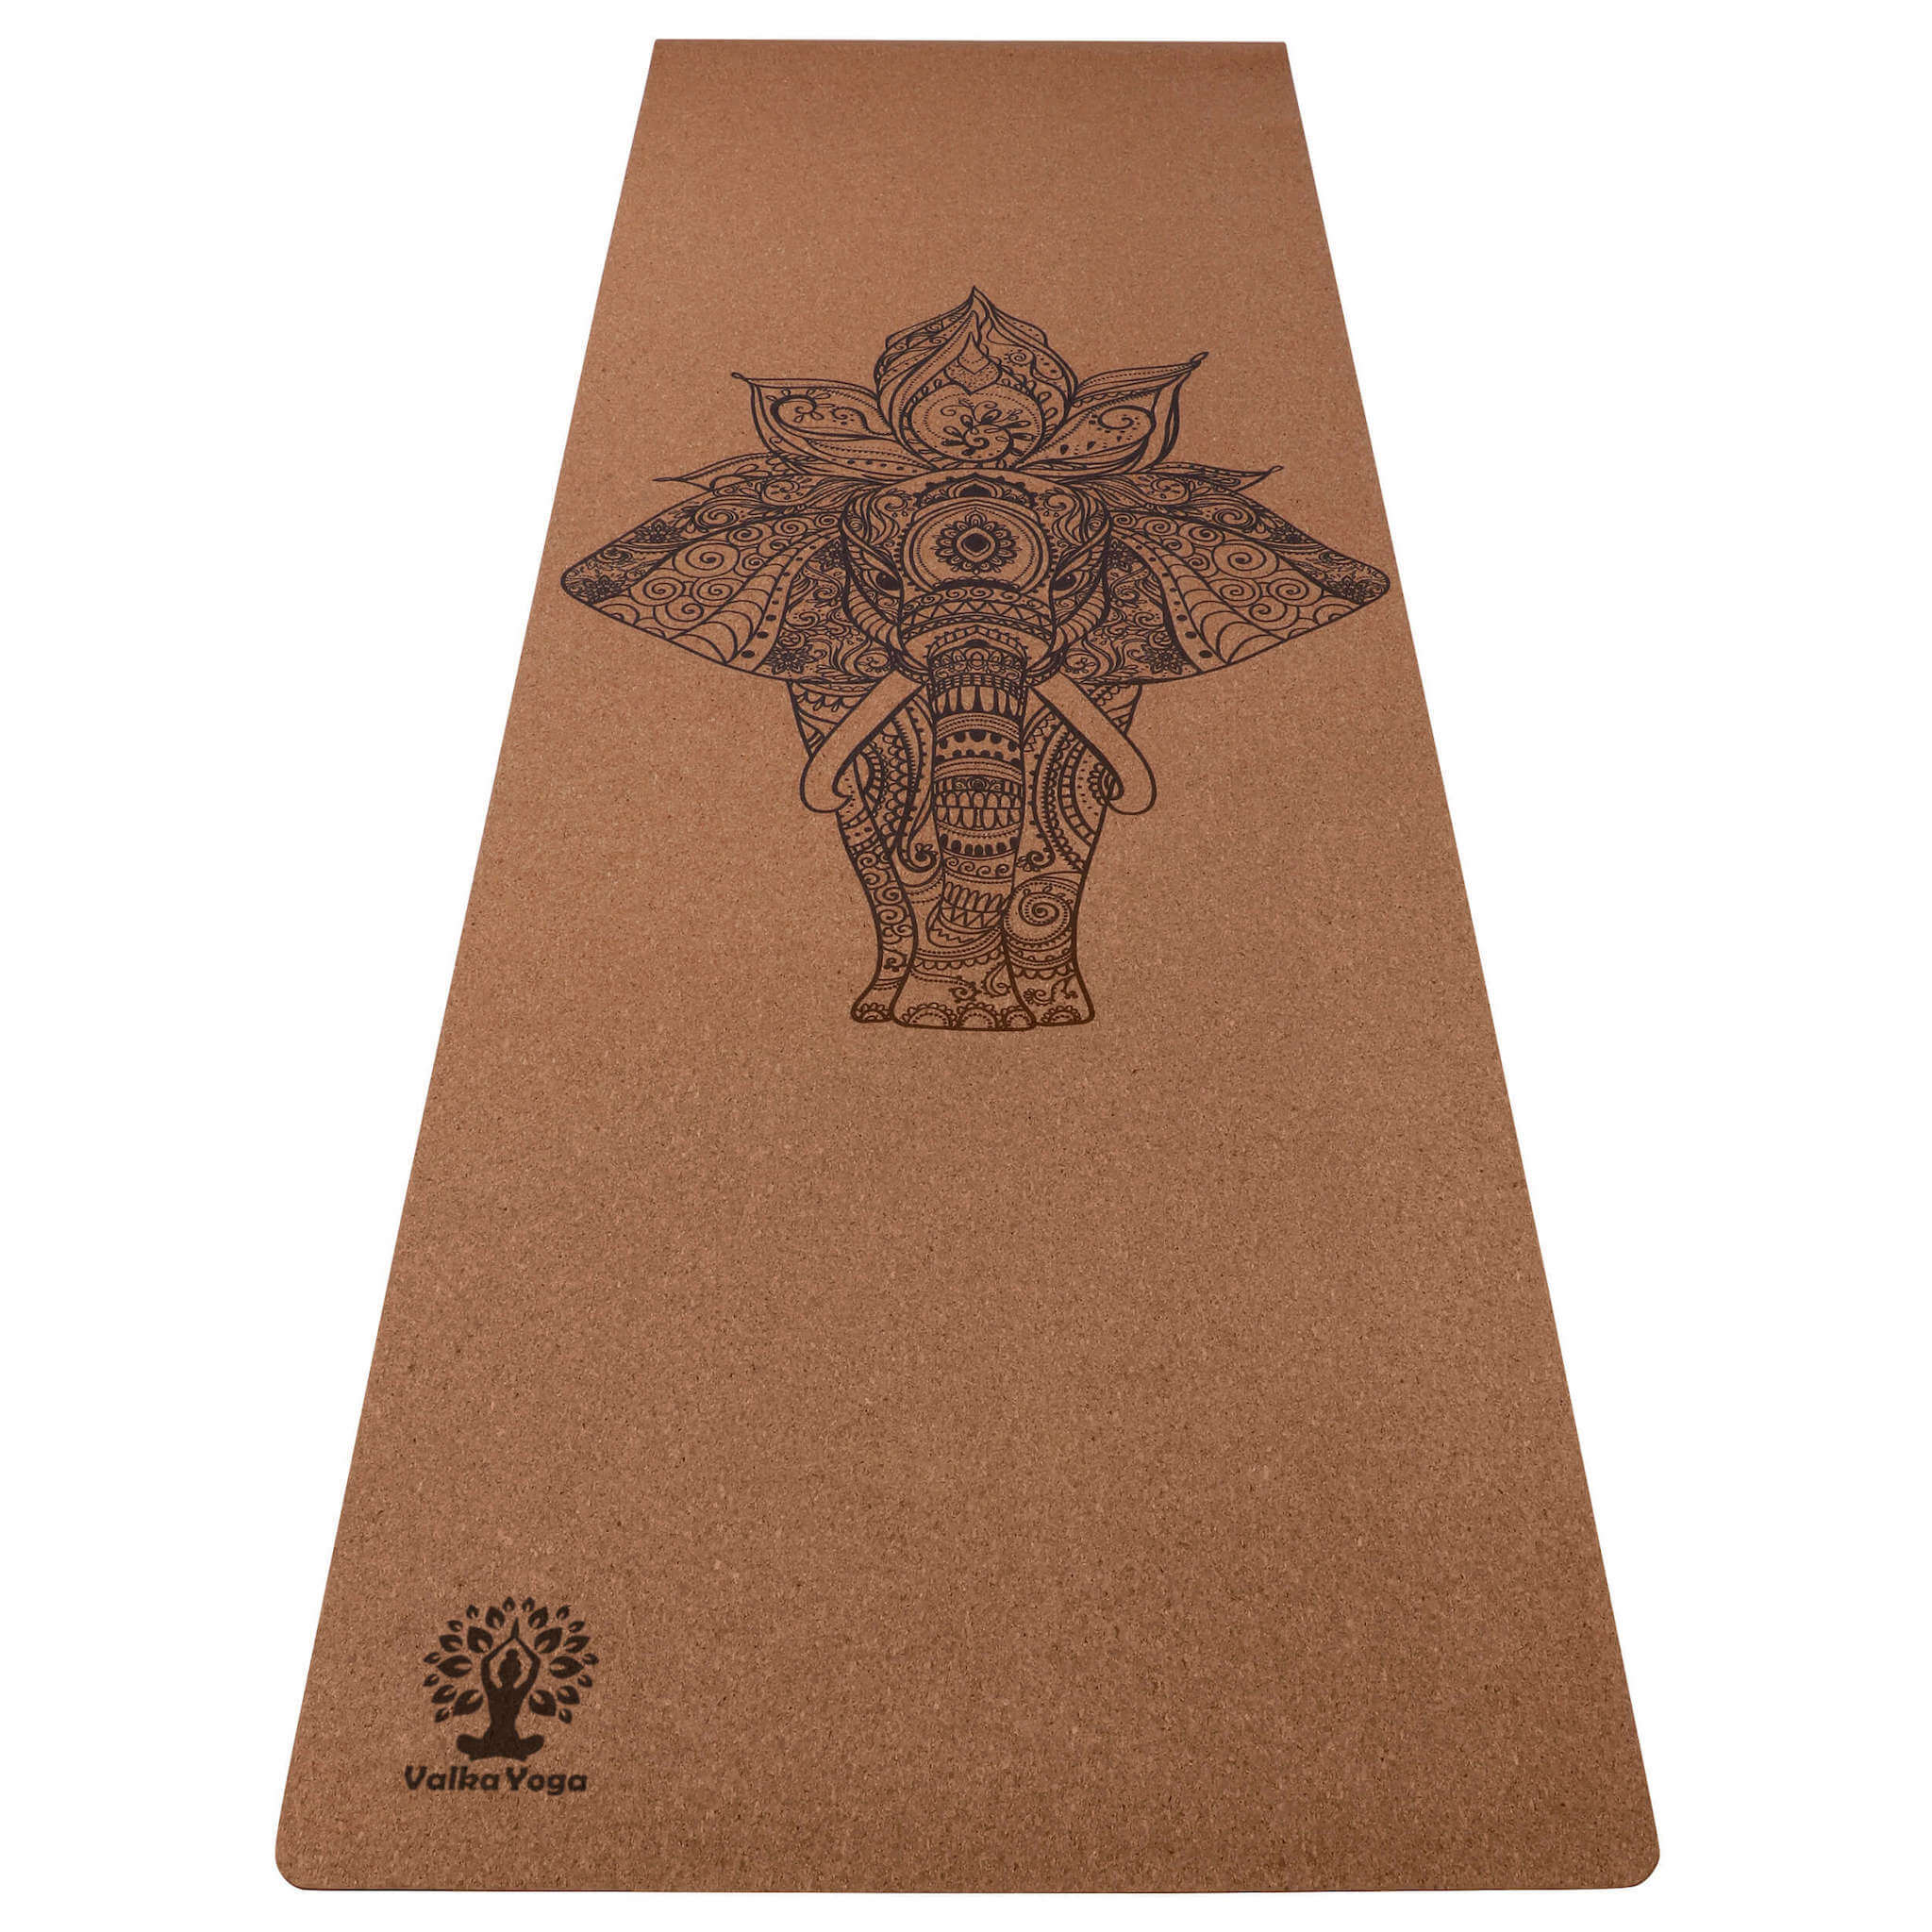 Yoga mat with Elephant mandala